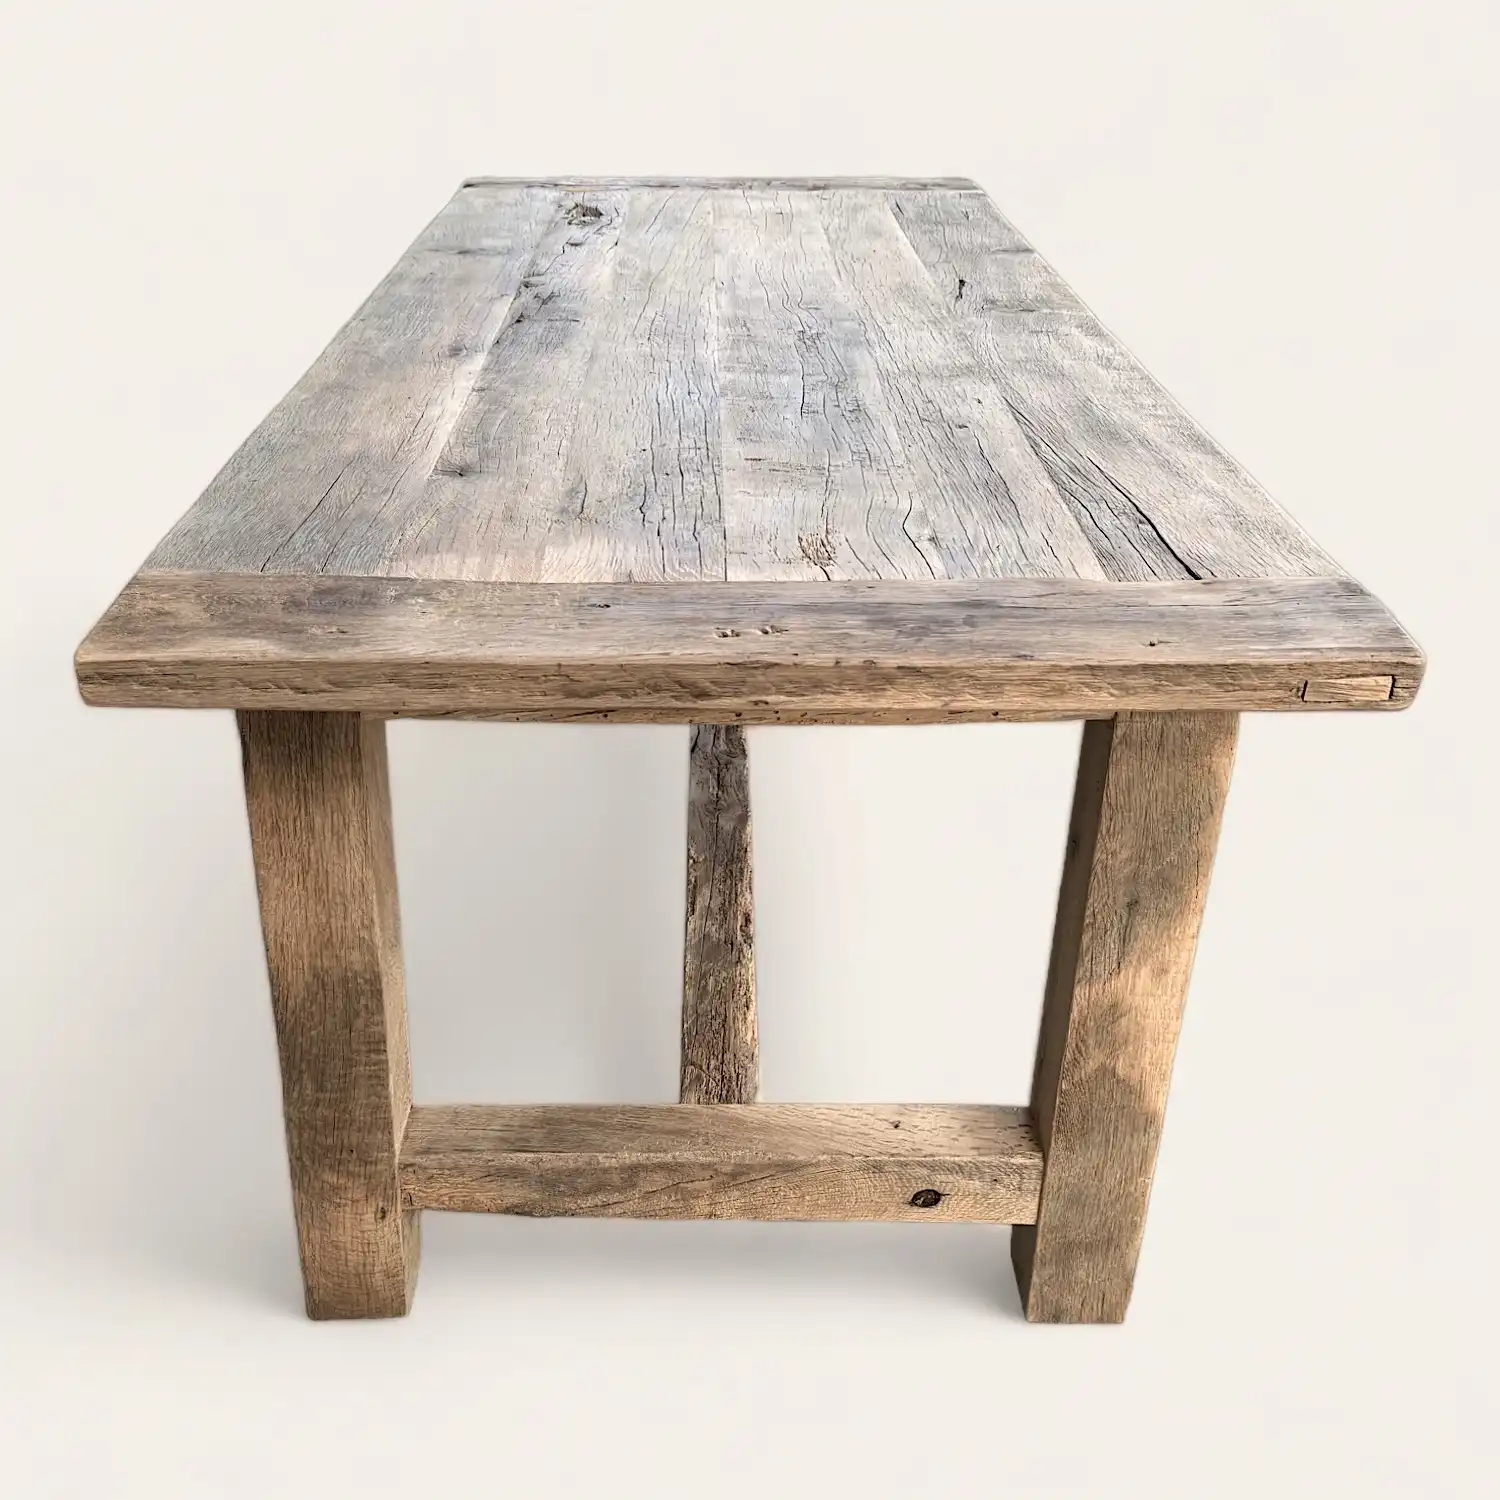  Une table à manger rustique en bois récupéré. 